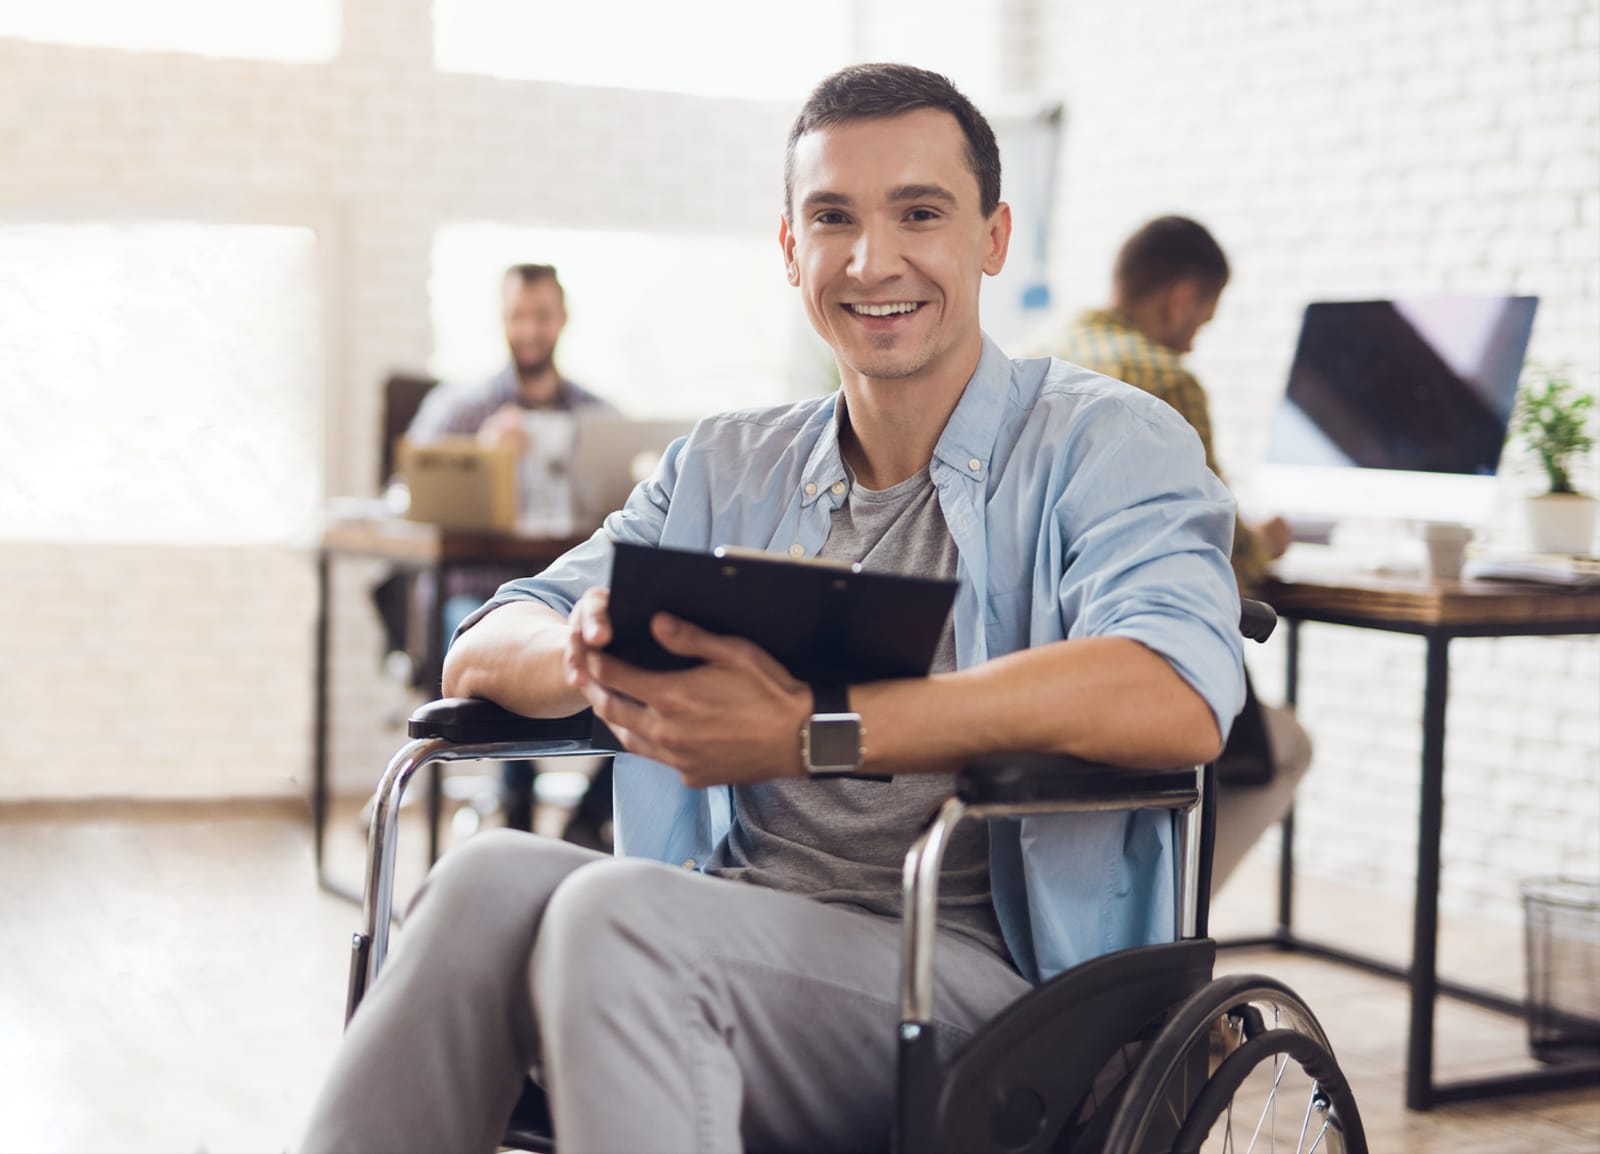 İŞKUR’dan Kendi İşini Kurmak İsteyen Engelli Girişimcilere 150 bin TL Hibe Desteği